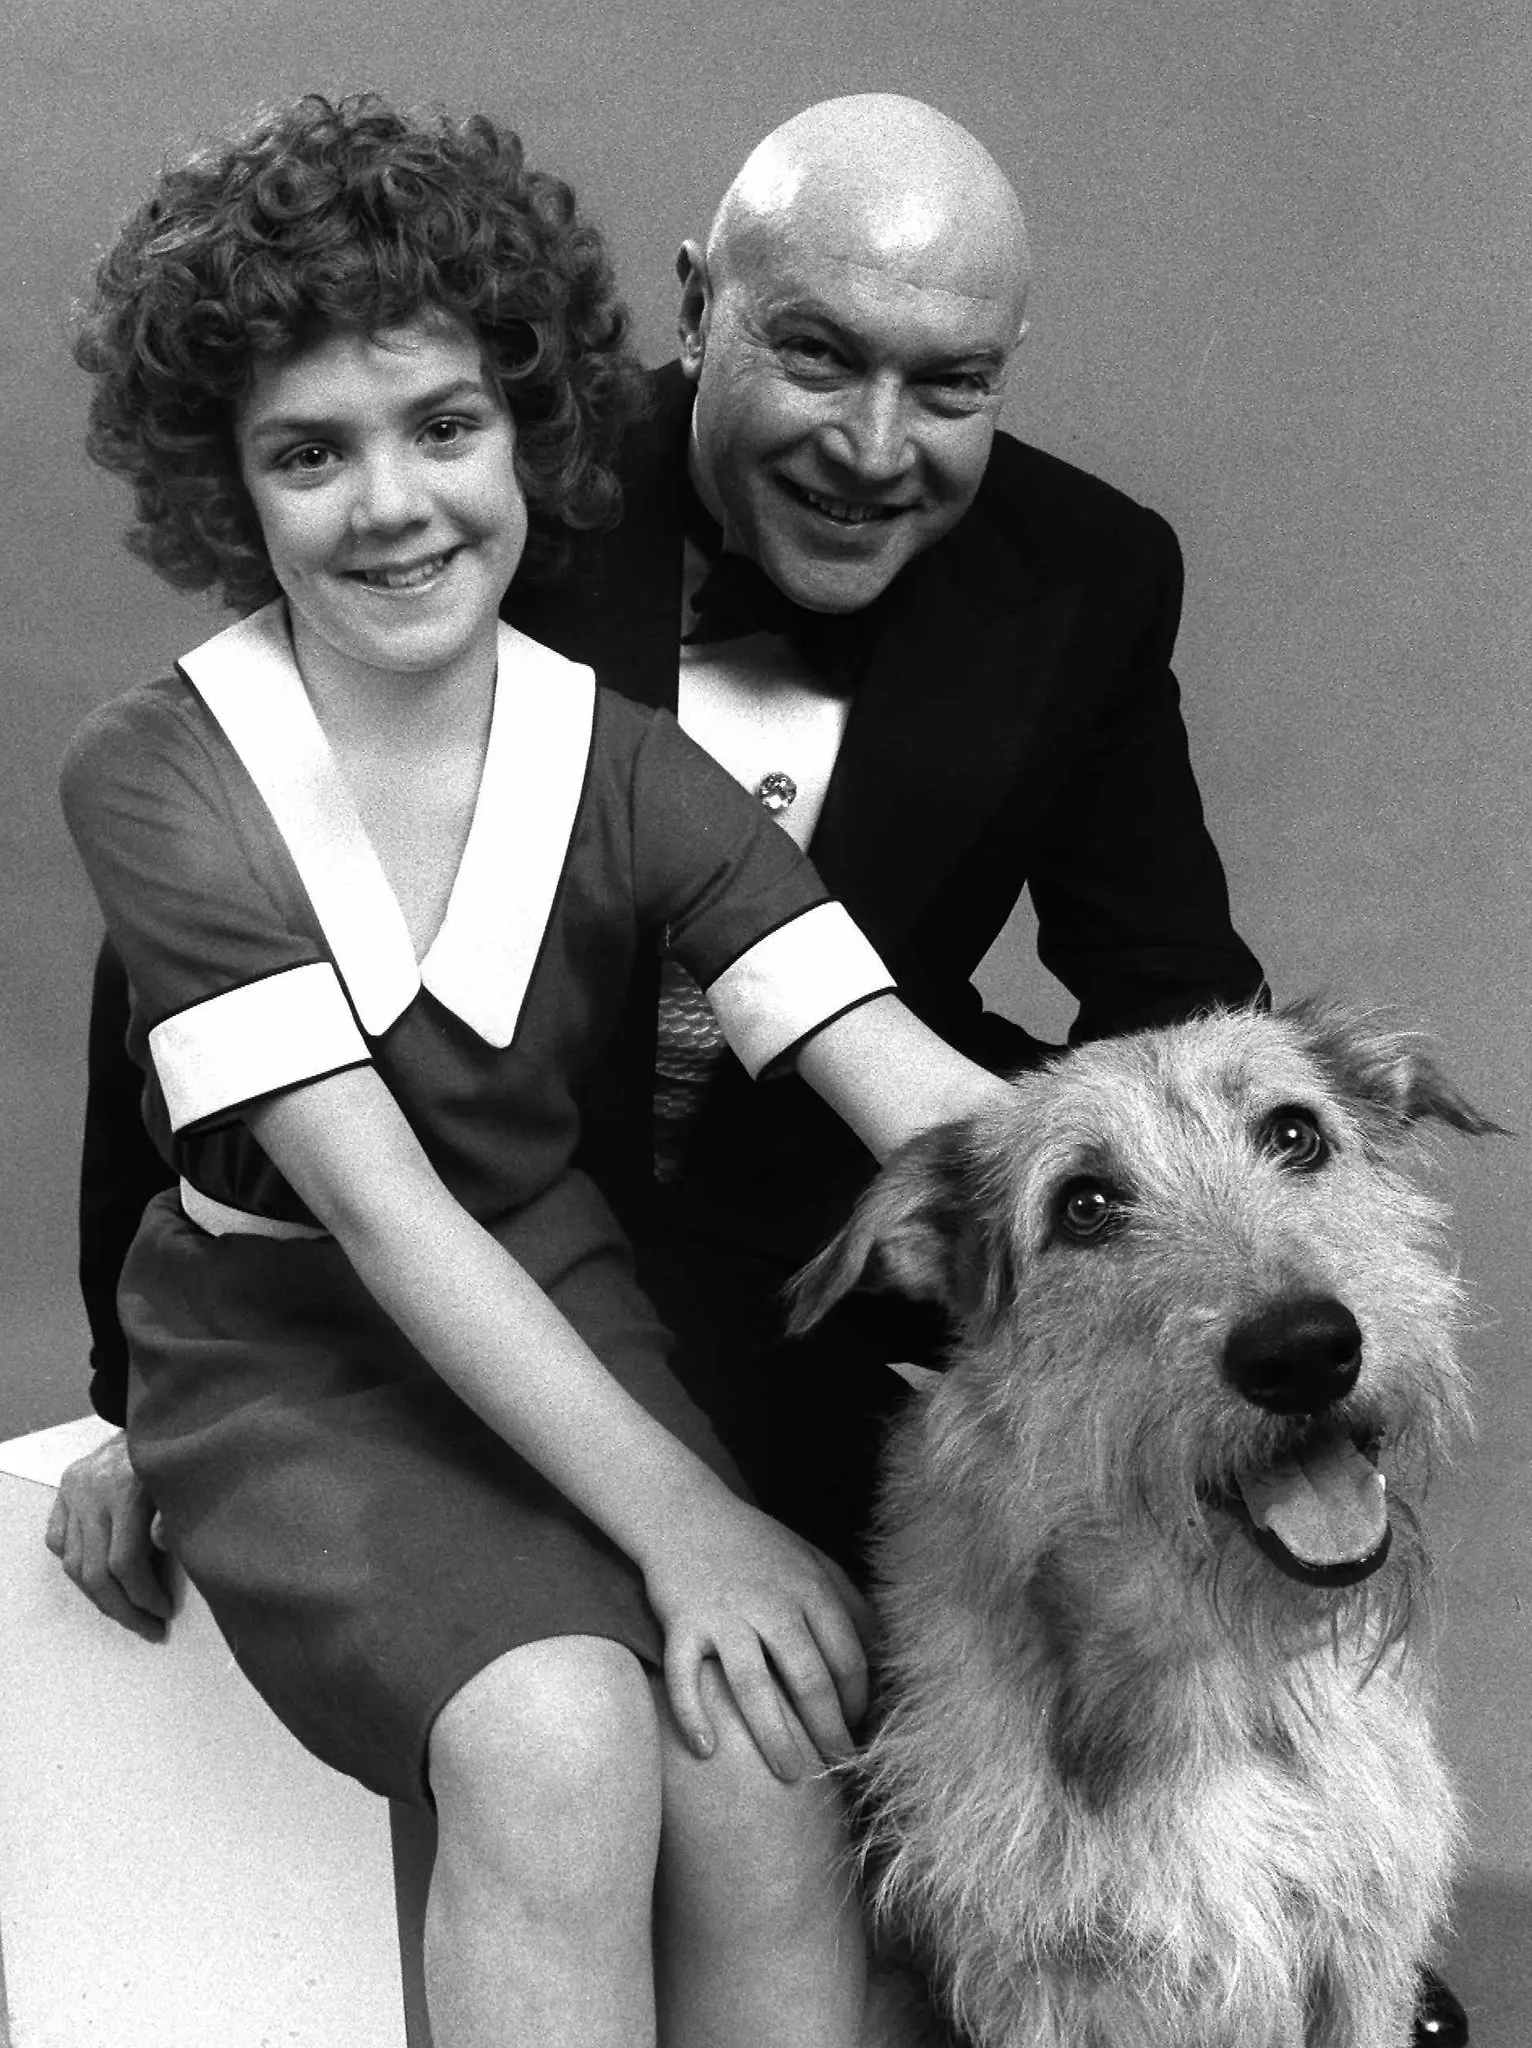 Andrea McArdle, que interpretou o papel-título na produção original de “Annie”, com Reid Shelton, que interpretou Daddy Warbucks. (Crédito: Associated Press)